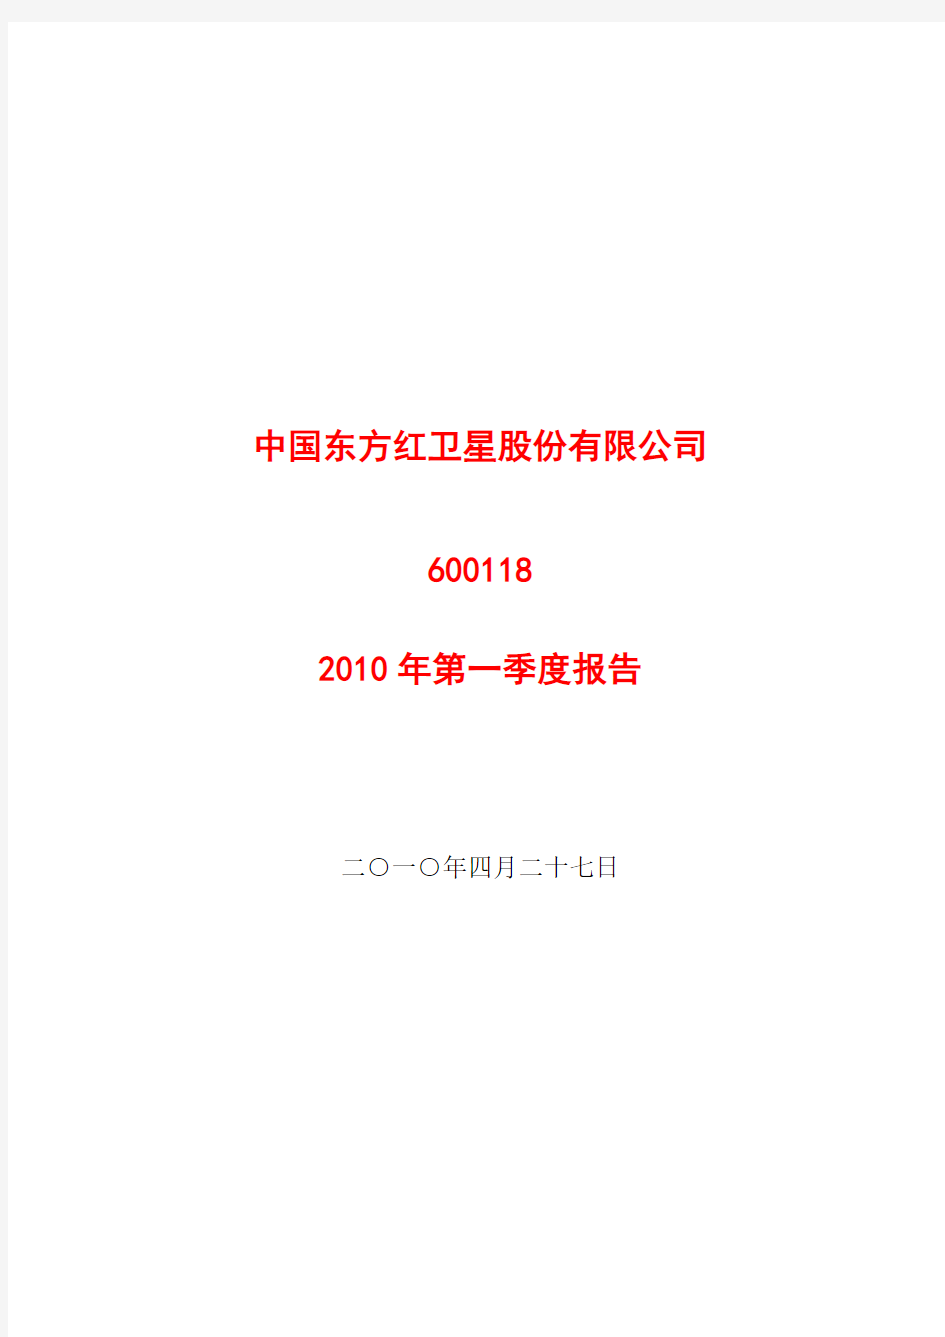 中国东方红卫星股份有限公司2010年第一季度报告